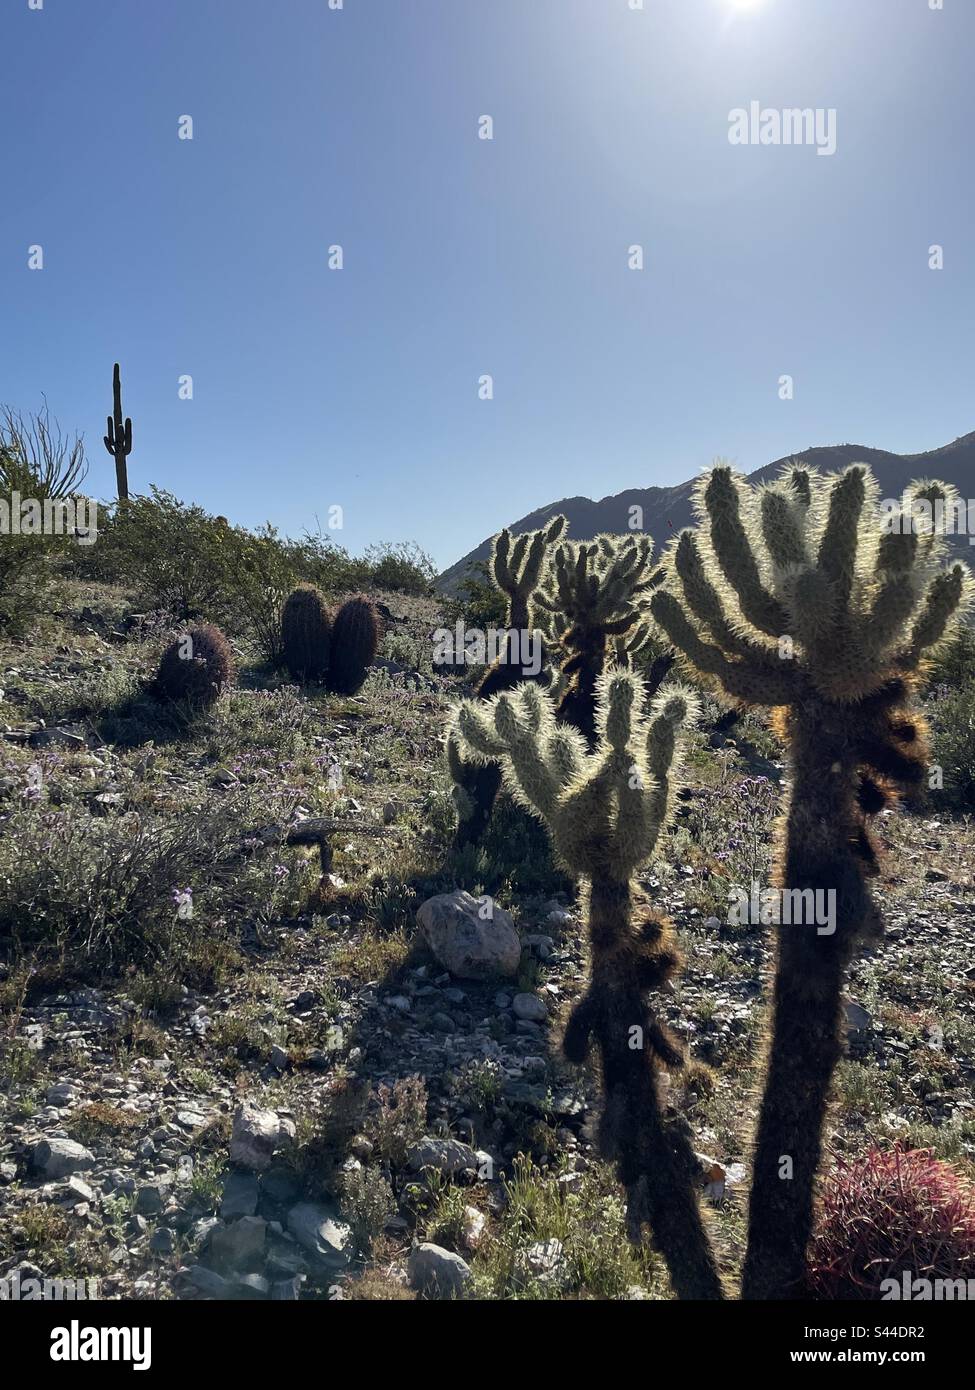 Cactus de la corolle épineuse rétro-éclairée, Saguaro sentinelle sur la crête, cactus à canon, désert de Sonoran, réserve des montagnes de Phoenix, Arizona Banque D'Images